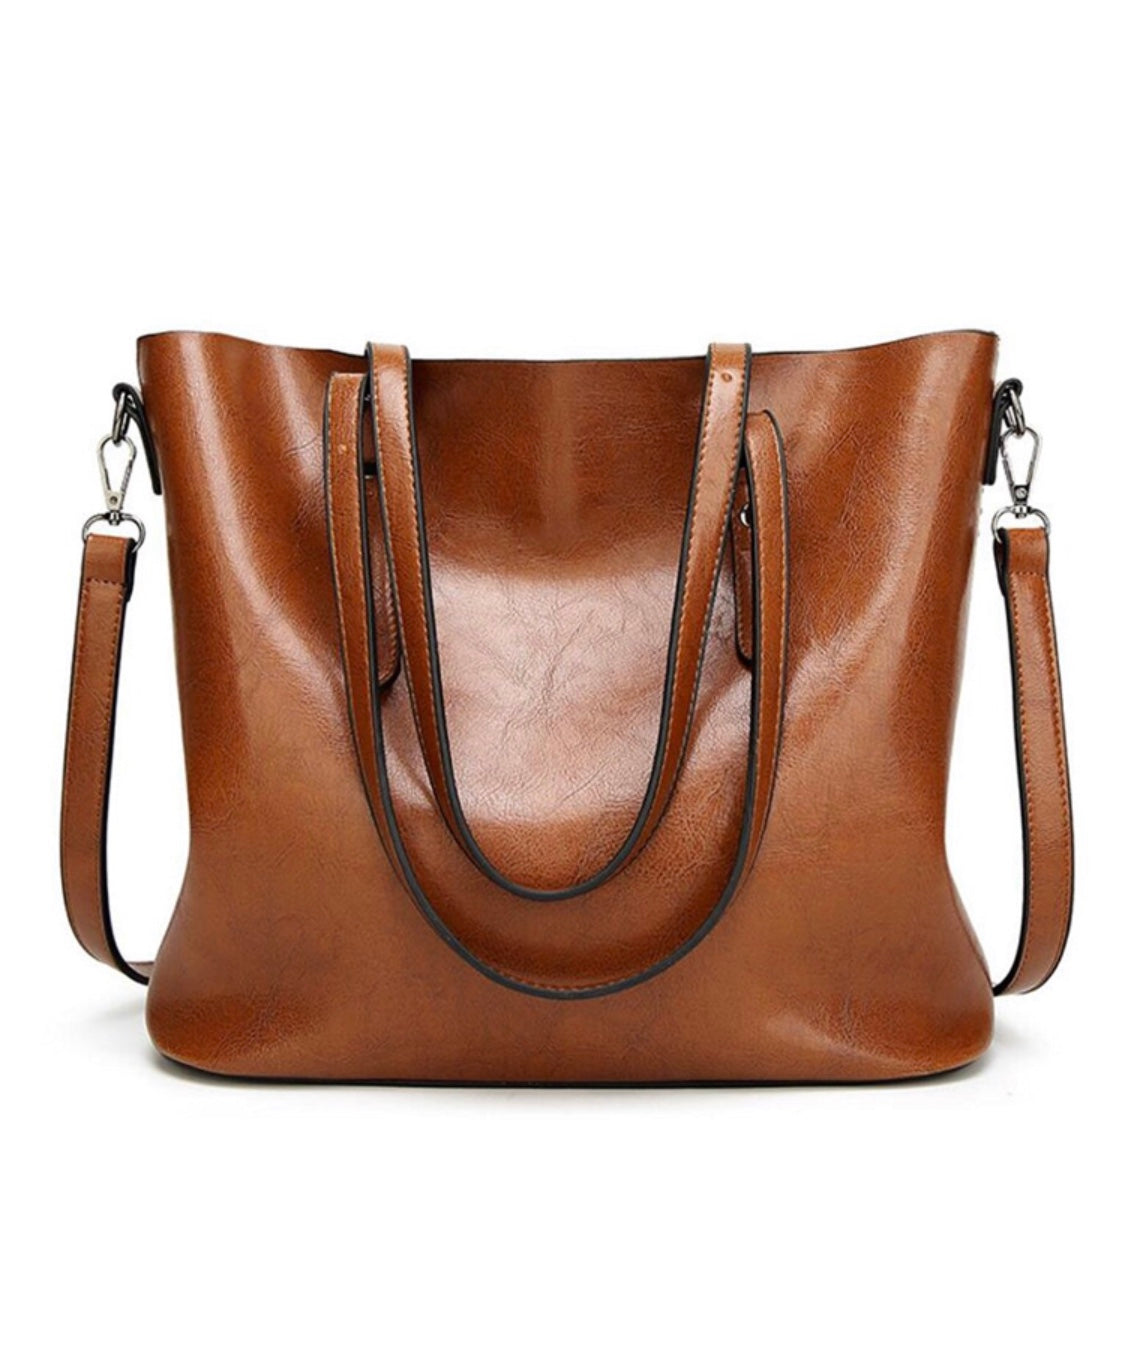 Daily Work Tote Shoulder Bag Large Capacity,  Leather Laptop Bag for Women Shoulder Handbag Large Work Tote